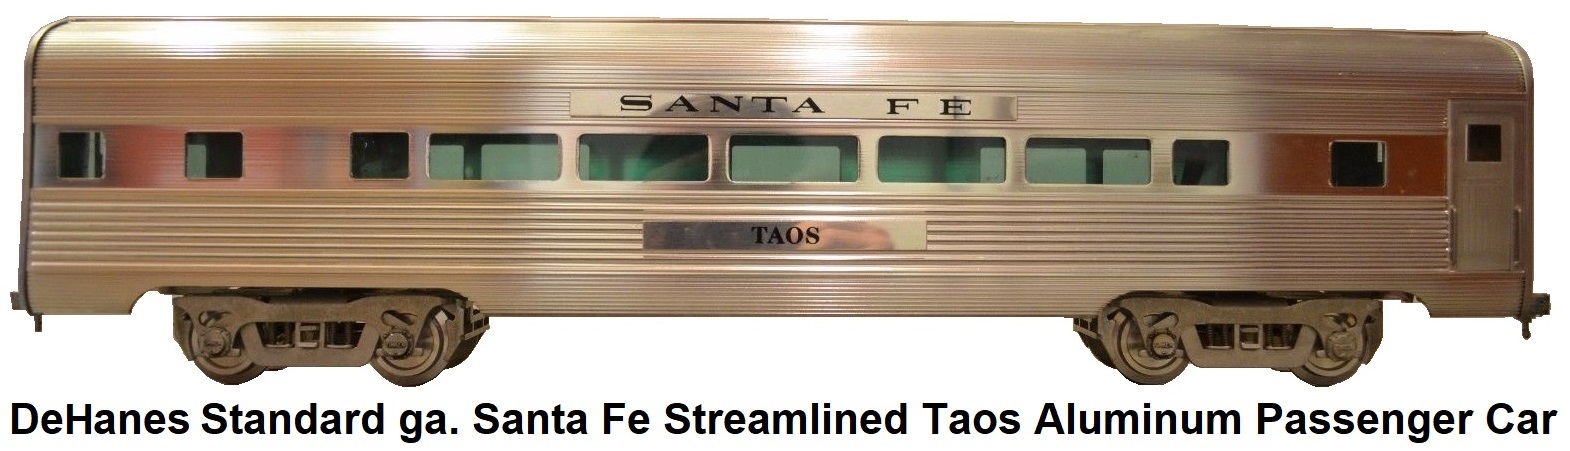 DeHanes Transportation Milestones Standard gauge Taos Santa Fe Streamlined Aluminum Passenger Car